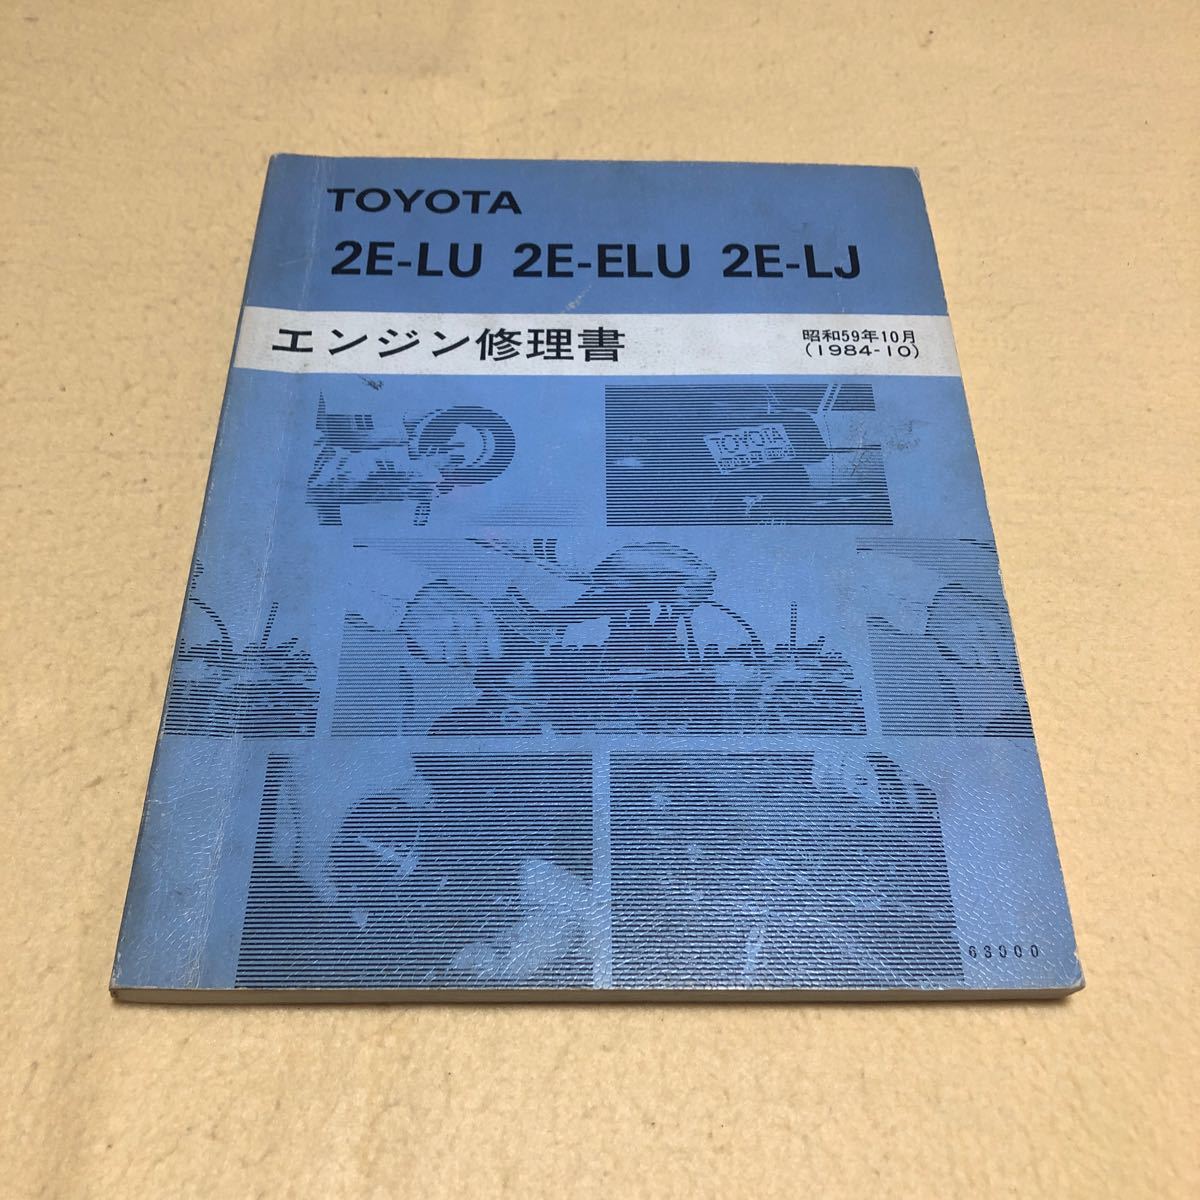 トヨタ 2E-LU 2E-ELU 2E-LJ 昭和59年10月 1984年10月 エンジン修理書 サービスマニュアル 中古☆_画像1